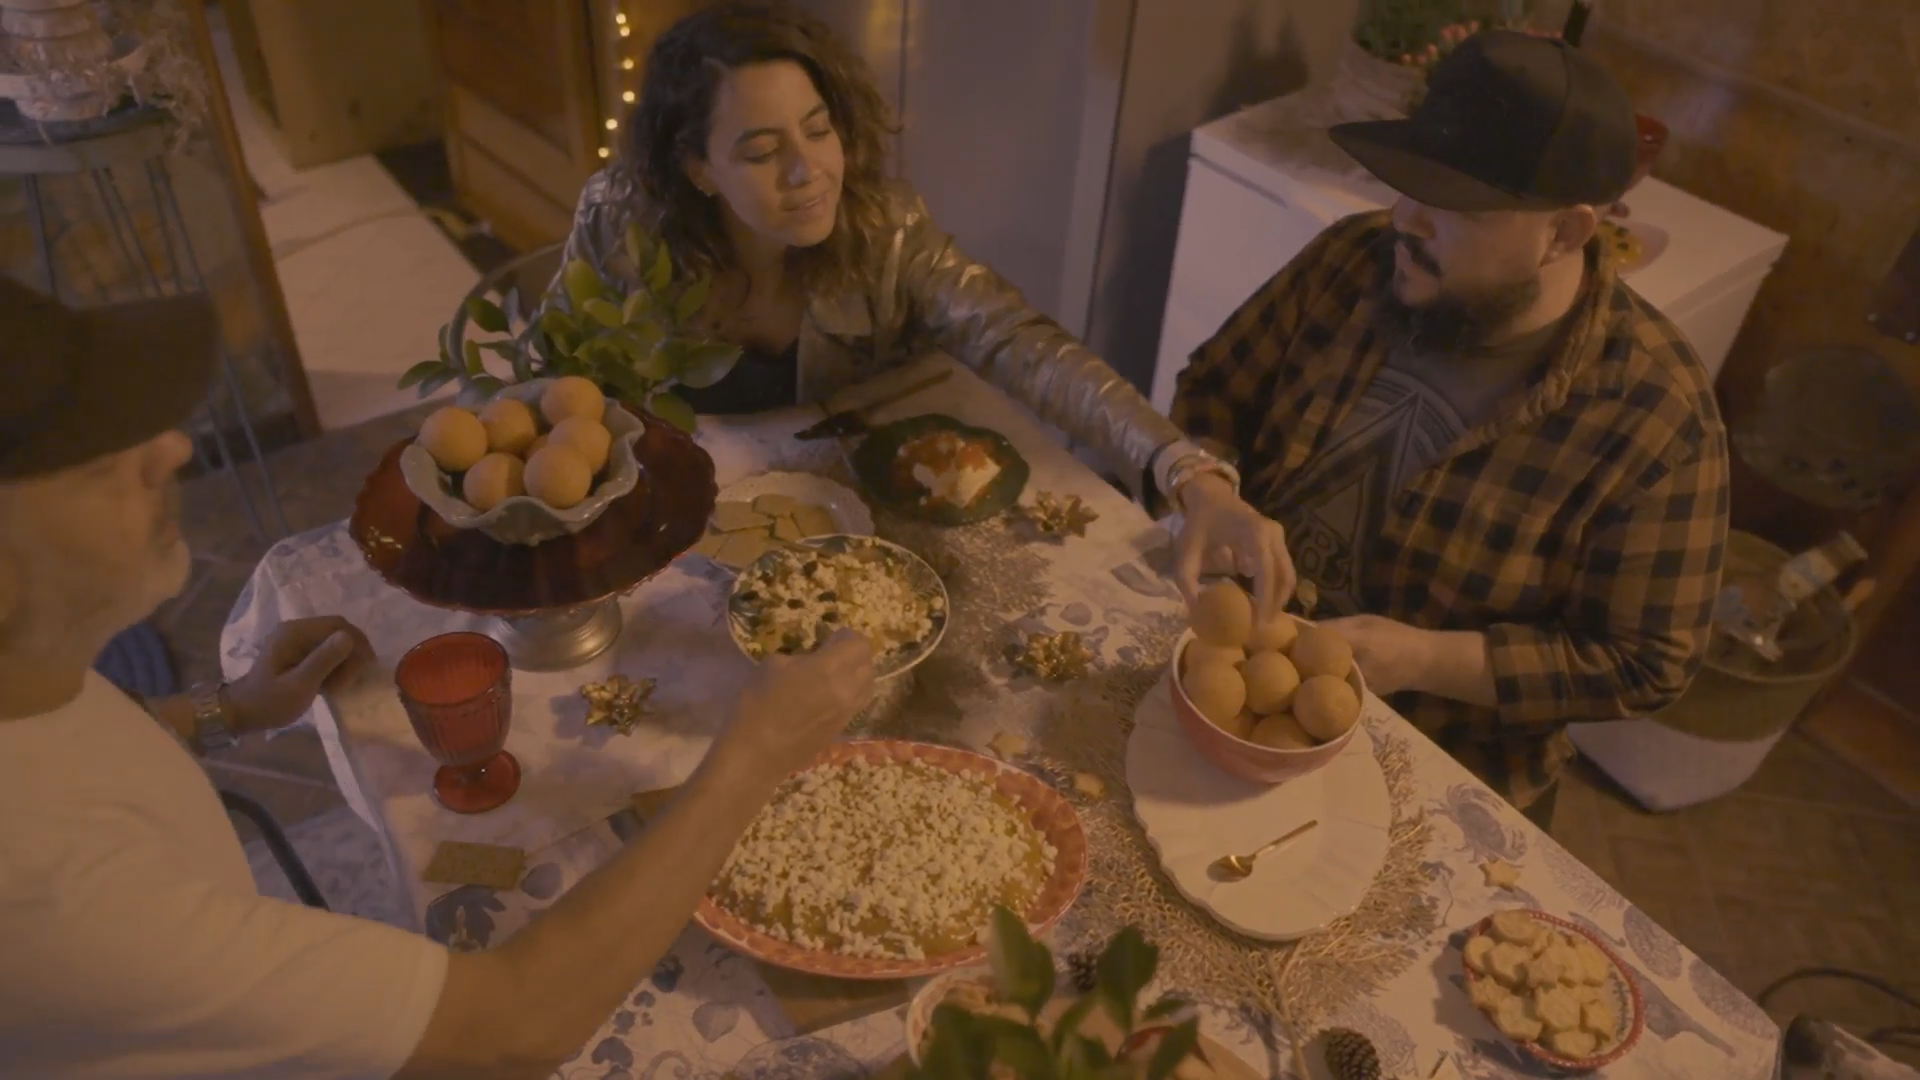 Un grupo de personas comparten El toque secreto de la Navidad que lo encuentras alrededor de la comida